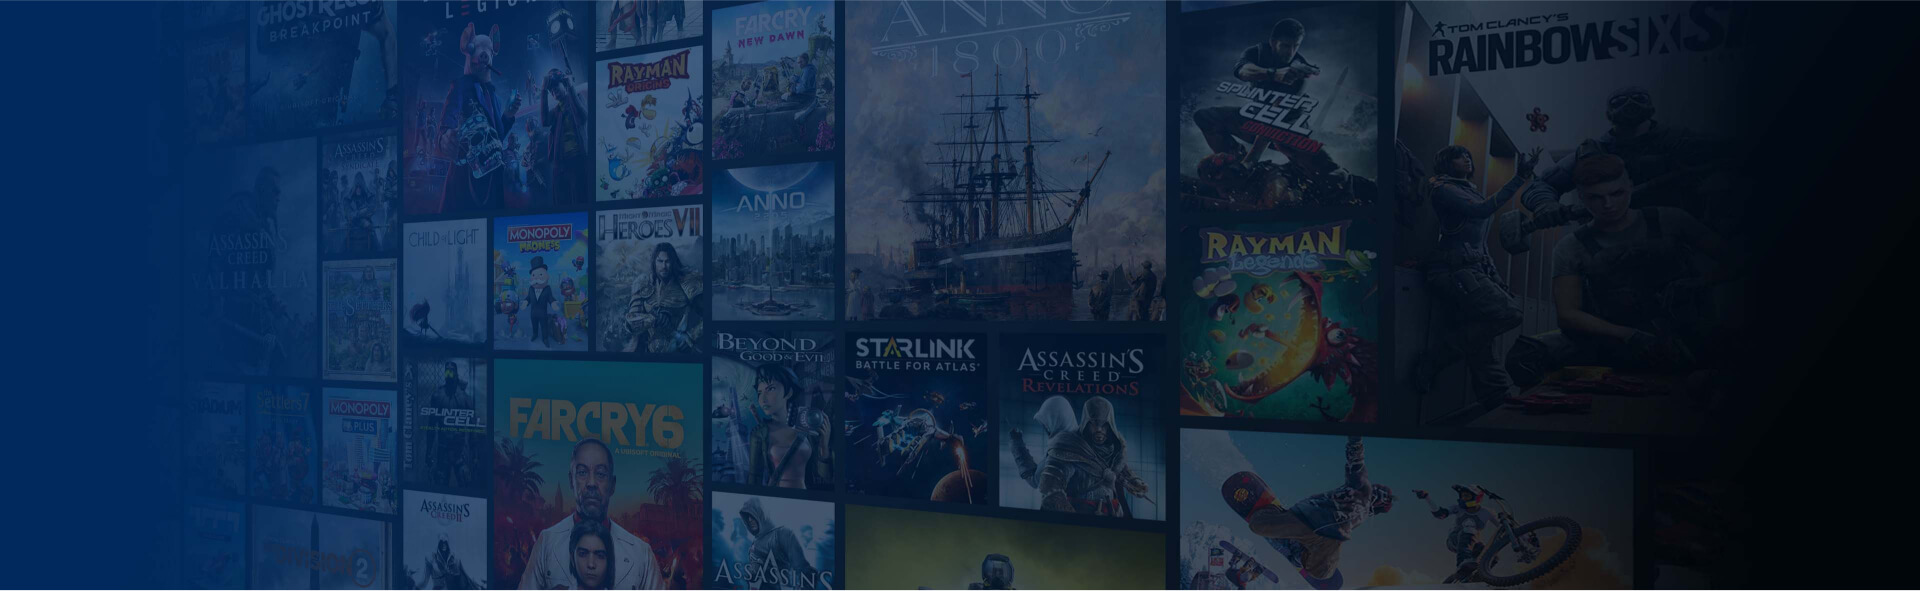 Mosaico che rappresenta la libreria dei giochi disponibili con l'abbonamento Ubisoft+